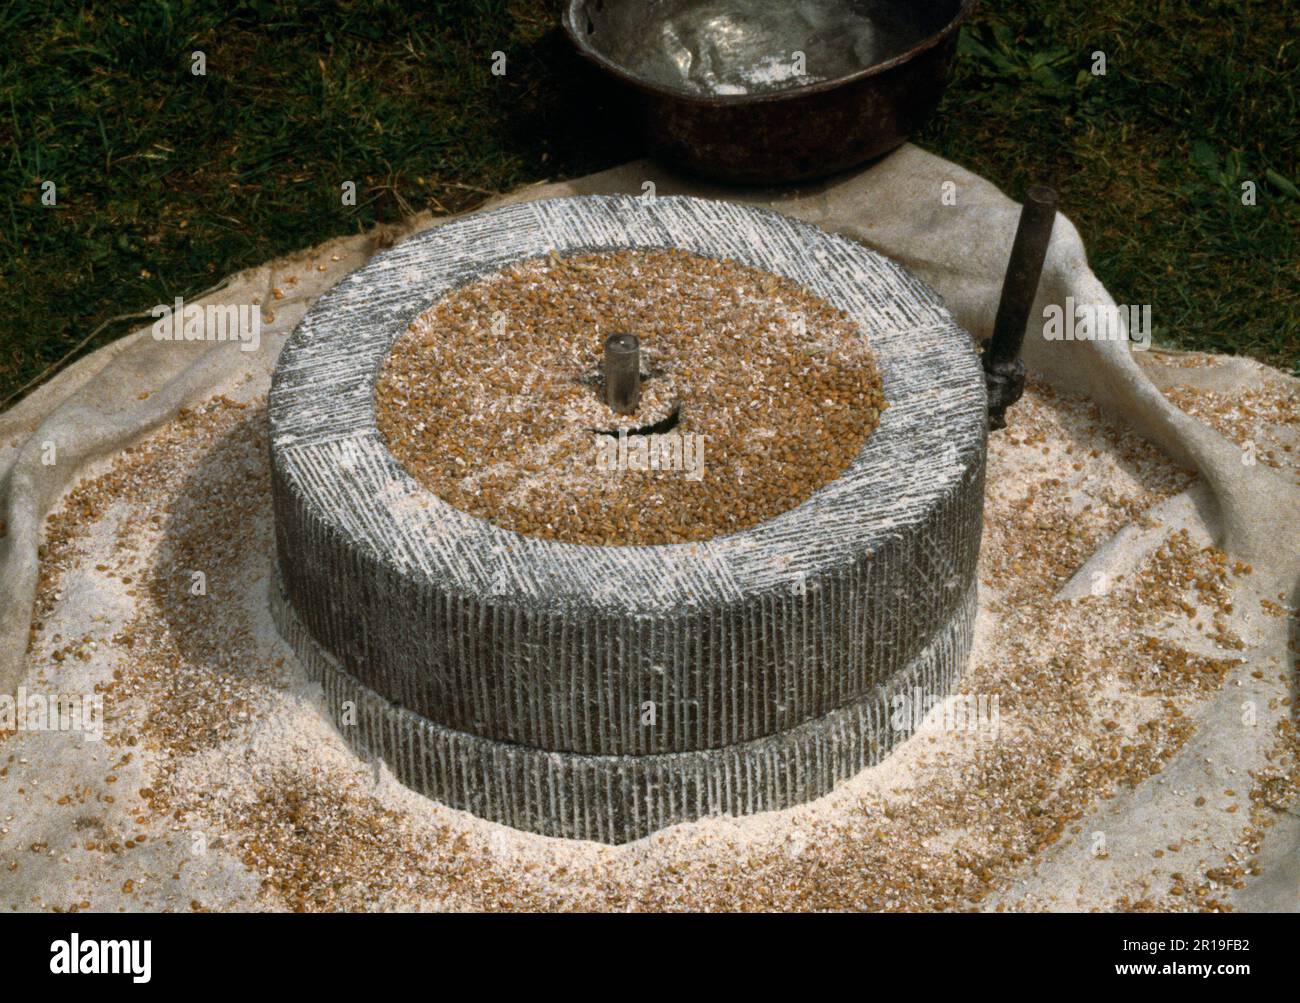 Une reproduction de la poupe rotative romaine (moulin à main) dans une exposition par la garde de rue Ermine à loggerheads Country Park, Denbighshire, pays de Galles, Royaume-Uni. Banque D'Images